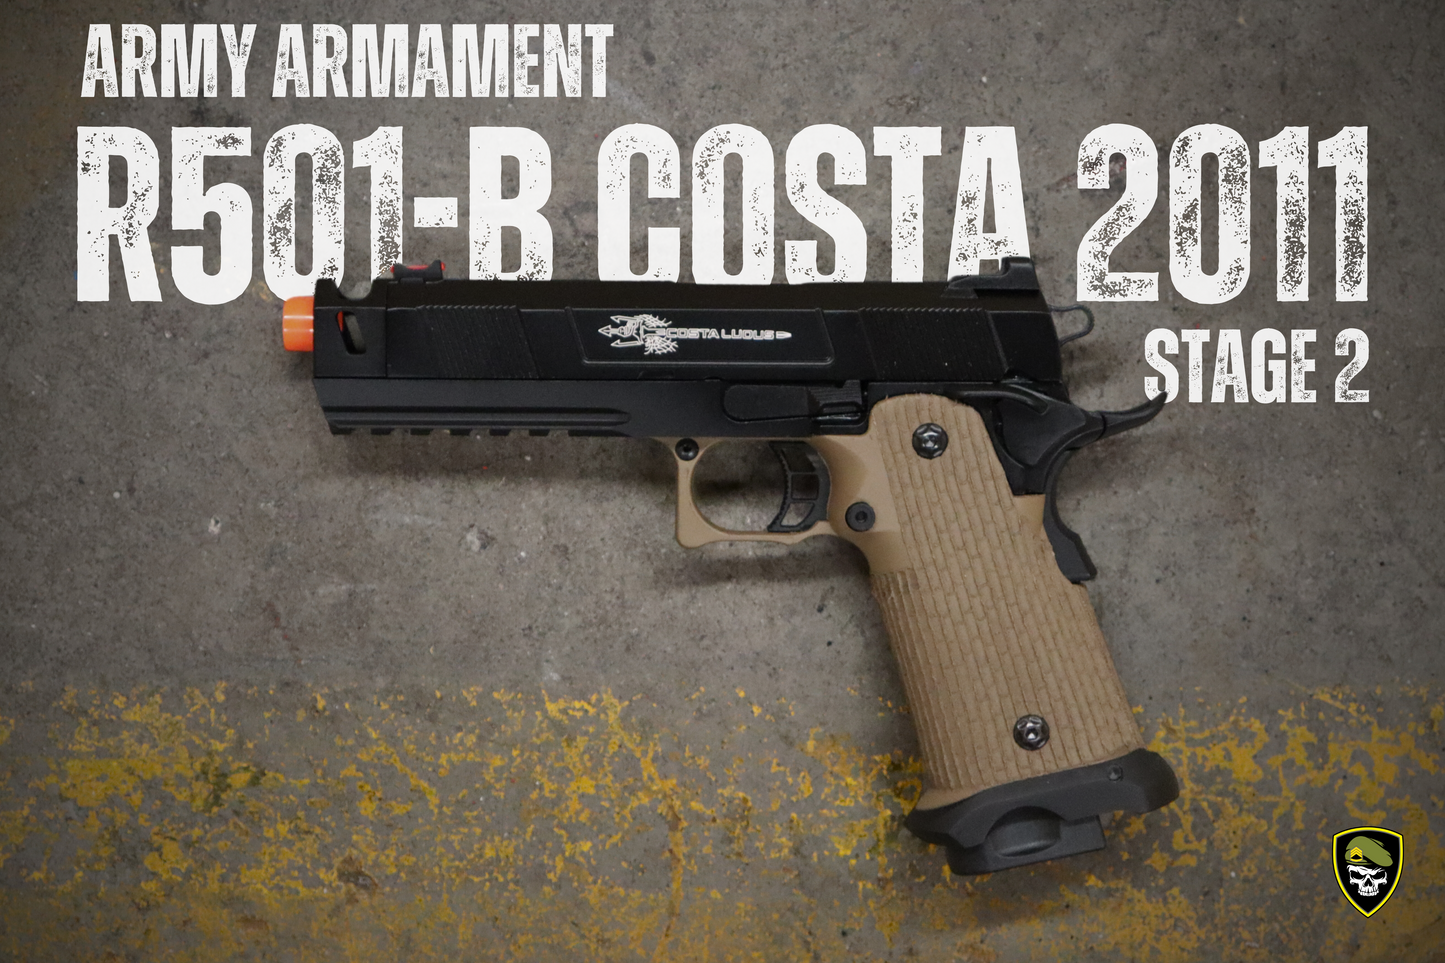 
                  
                    Army Armament Stage 2 R501-B STI (COSTA 2011) Gel Blaster
                  
                